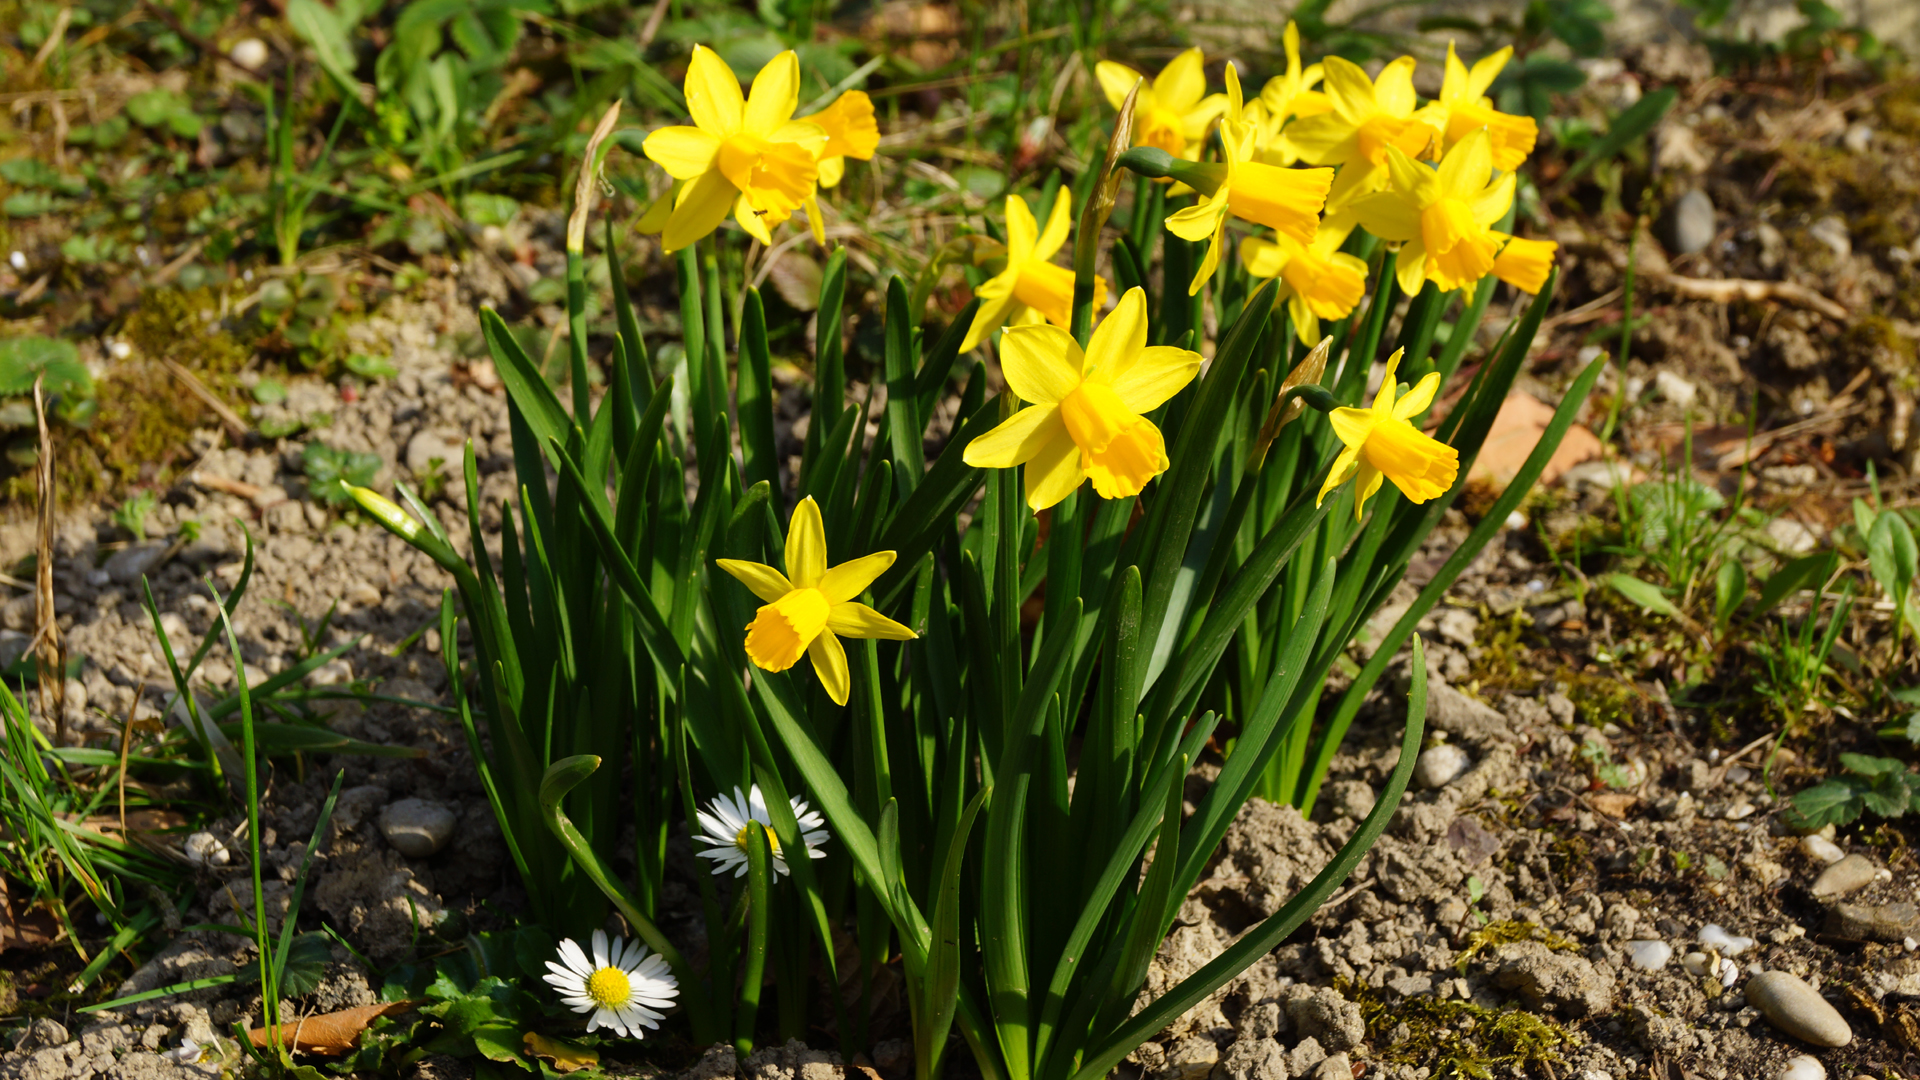 Fotostrecke Frühling Abbildung 28: Märzenbecher und Gänseblümchen